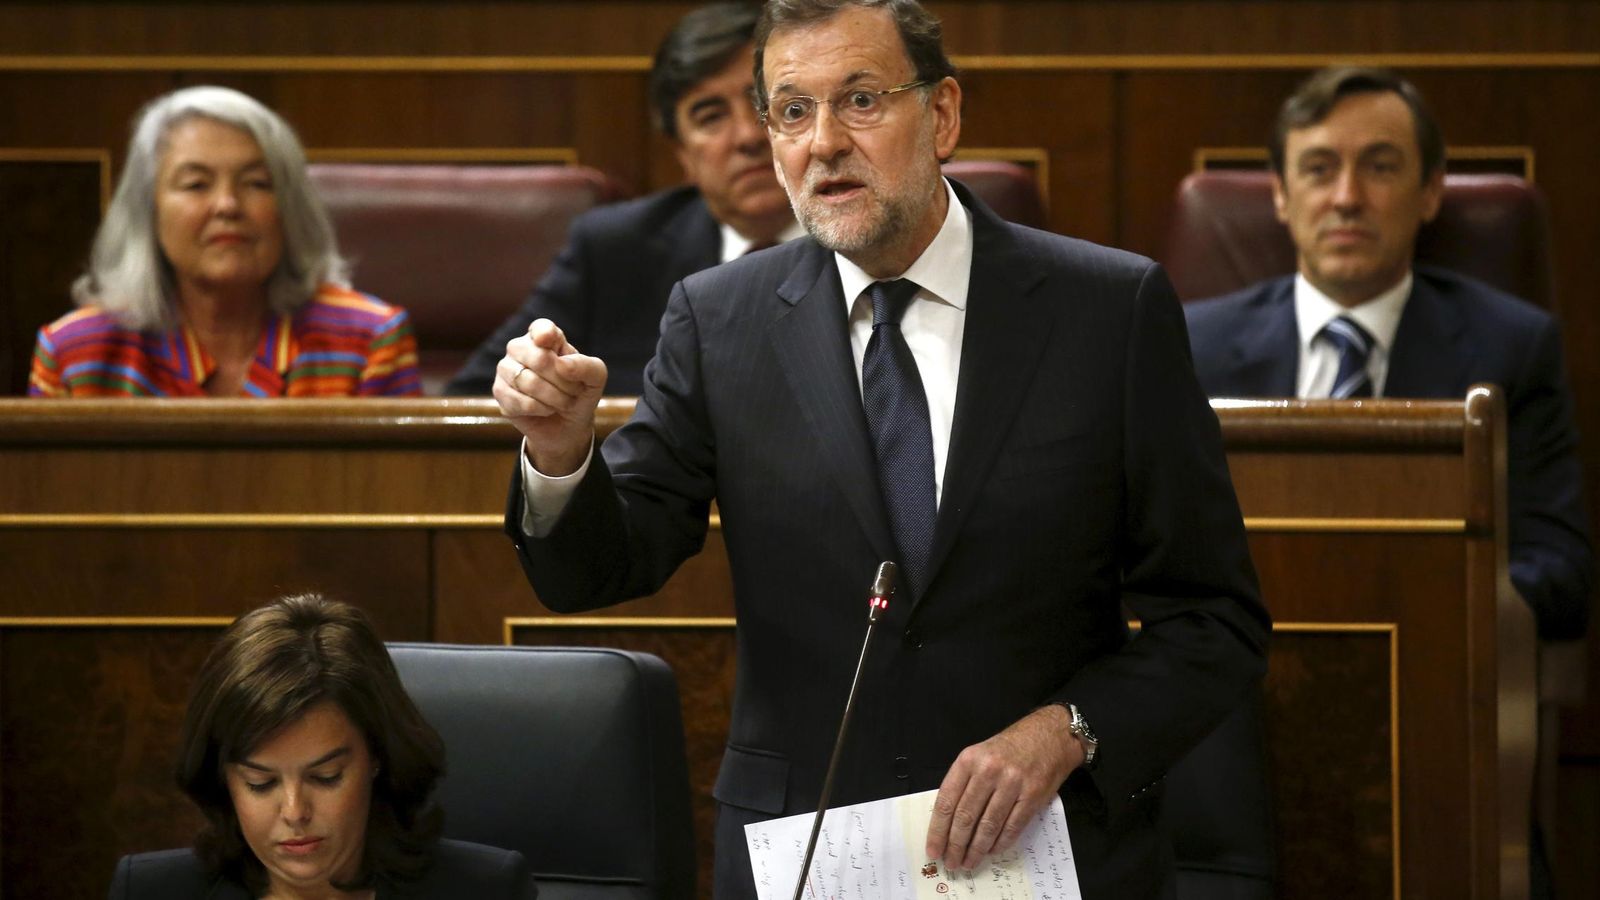 Foto: El presidente del Gobierno, Mariano Rajoy, durante la sesión en el Congreso. (Reuters)